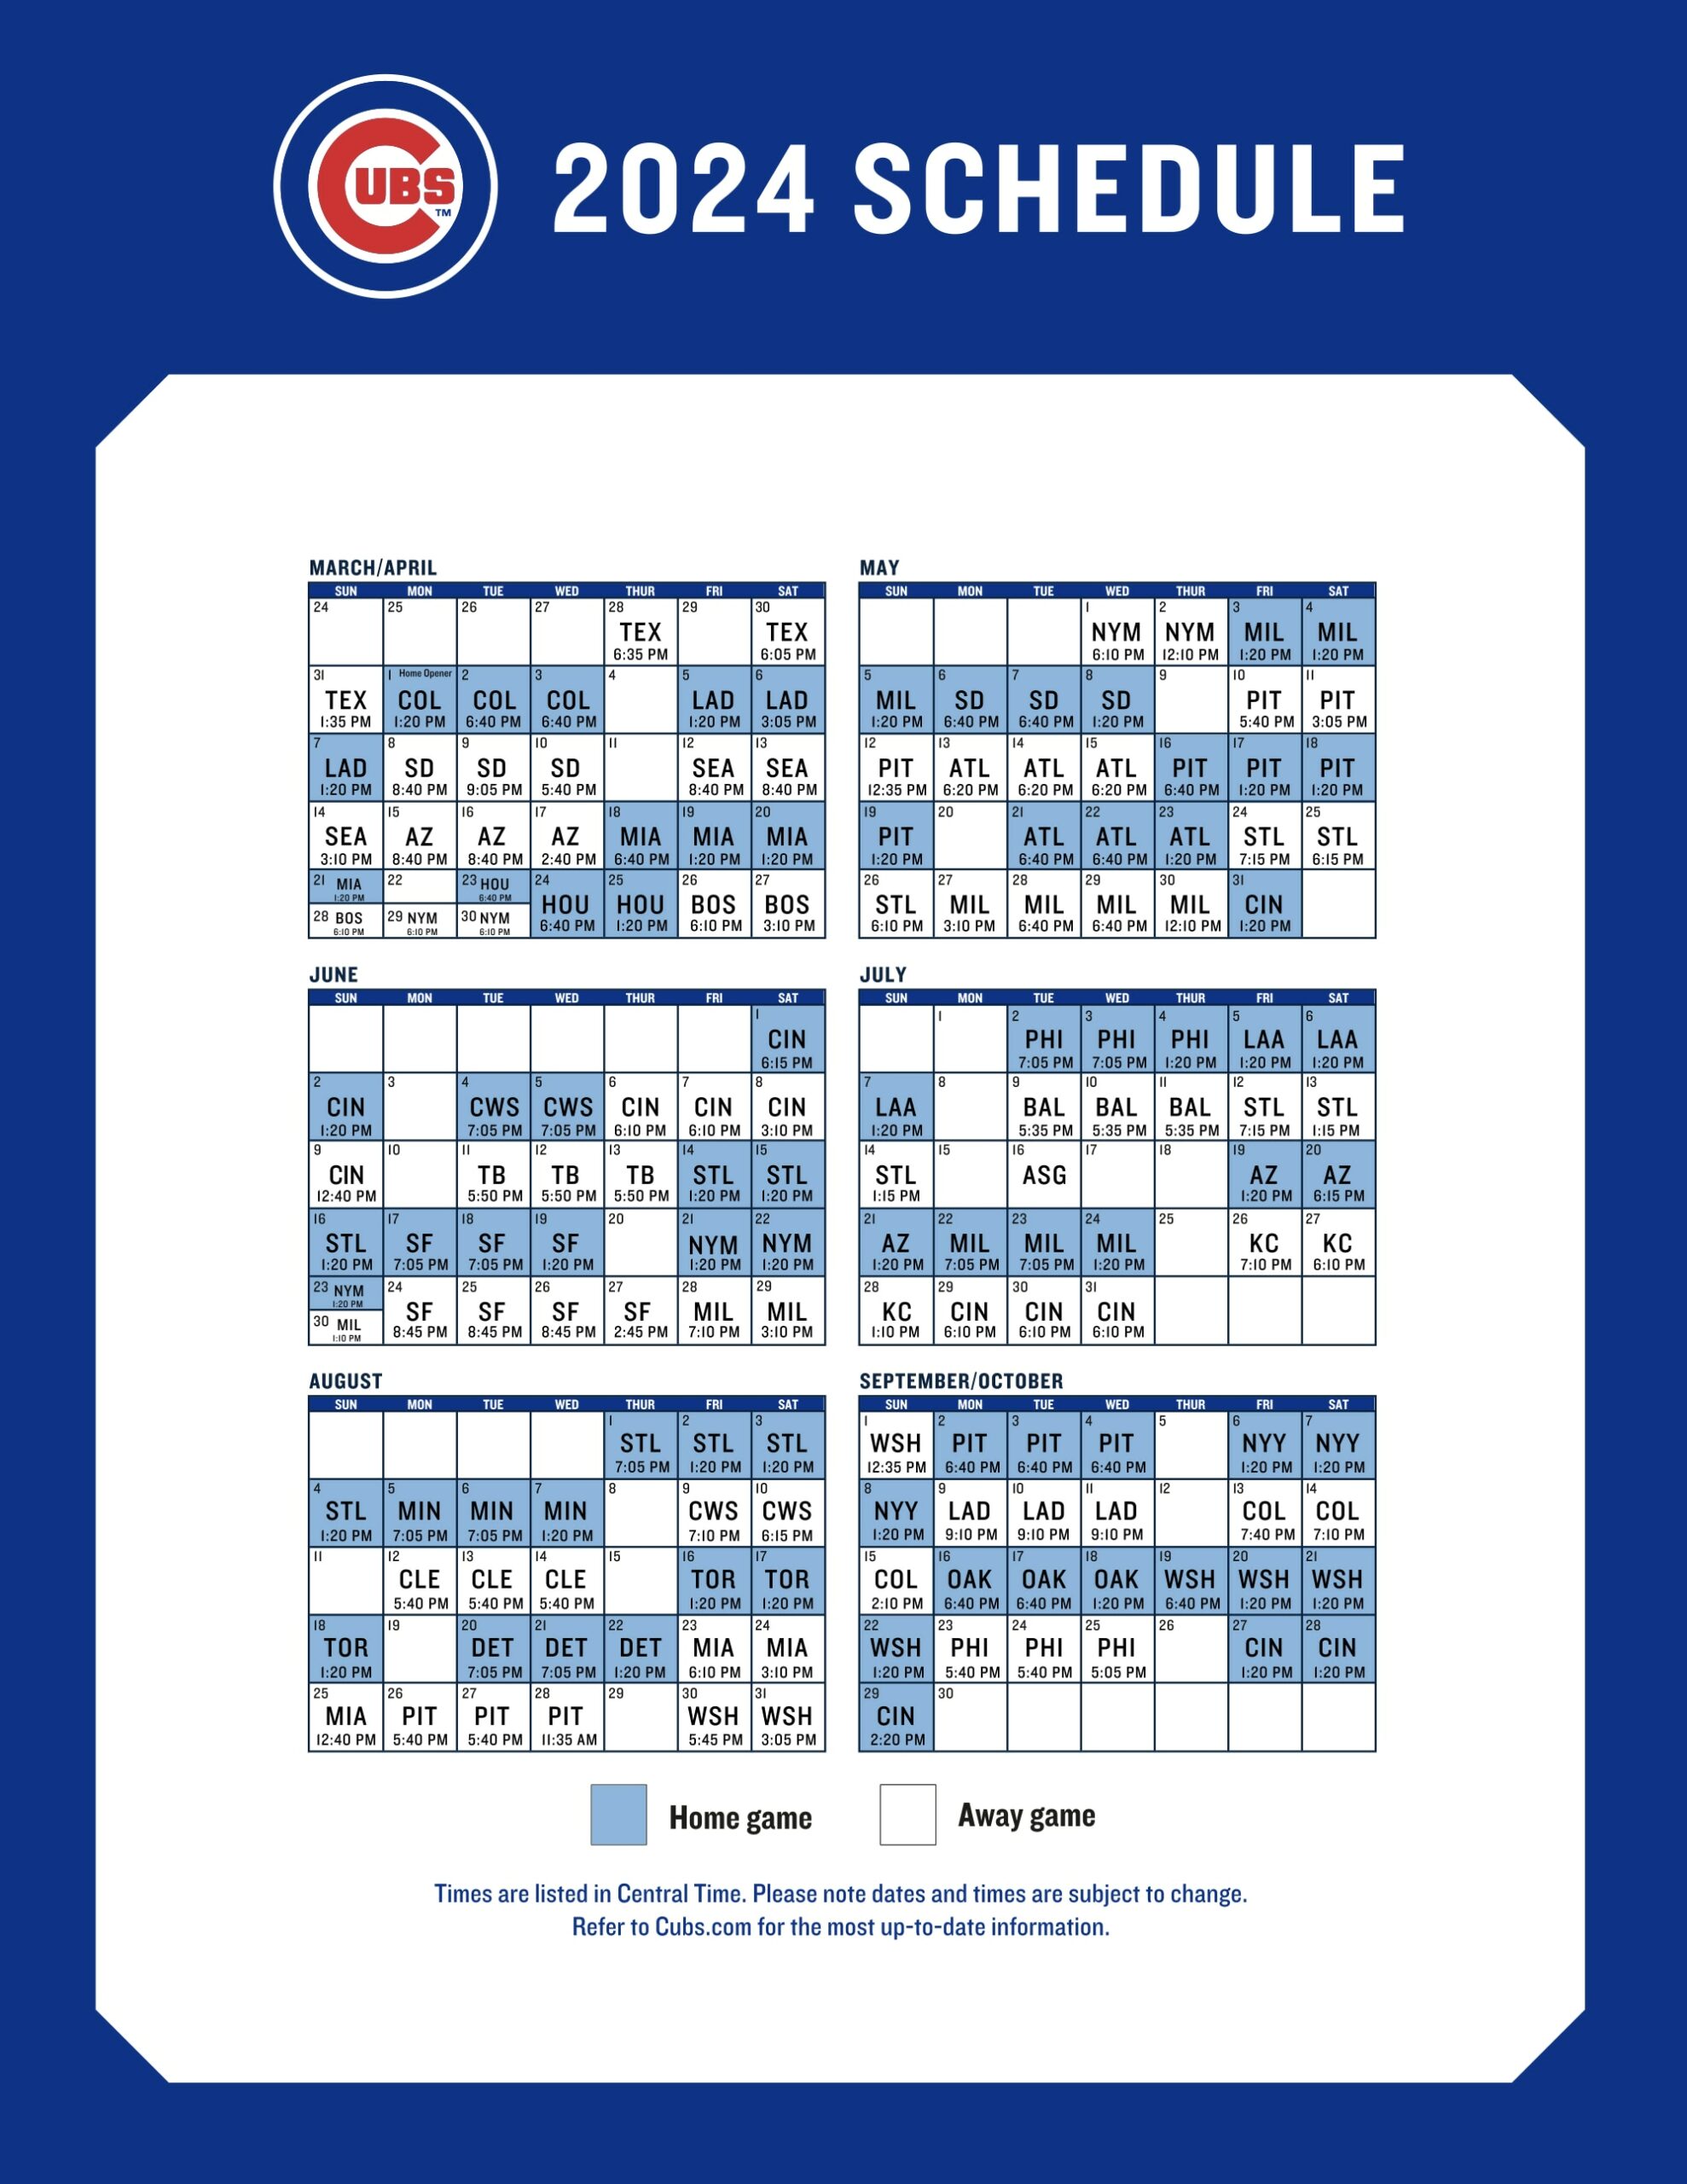 Cubs 2024 schedule